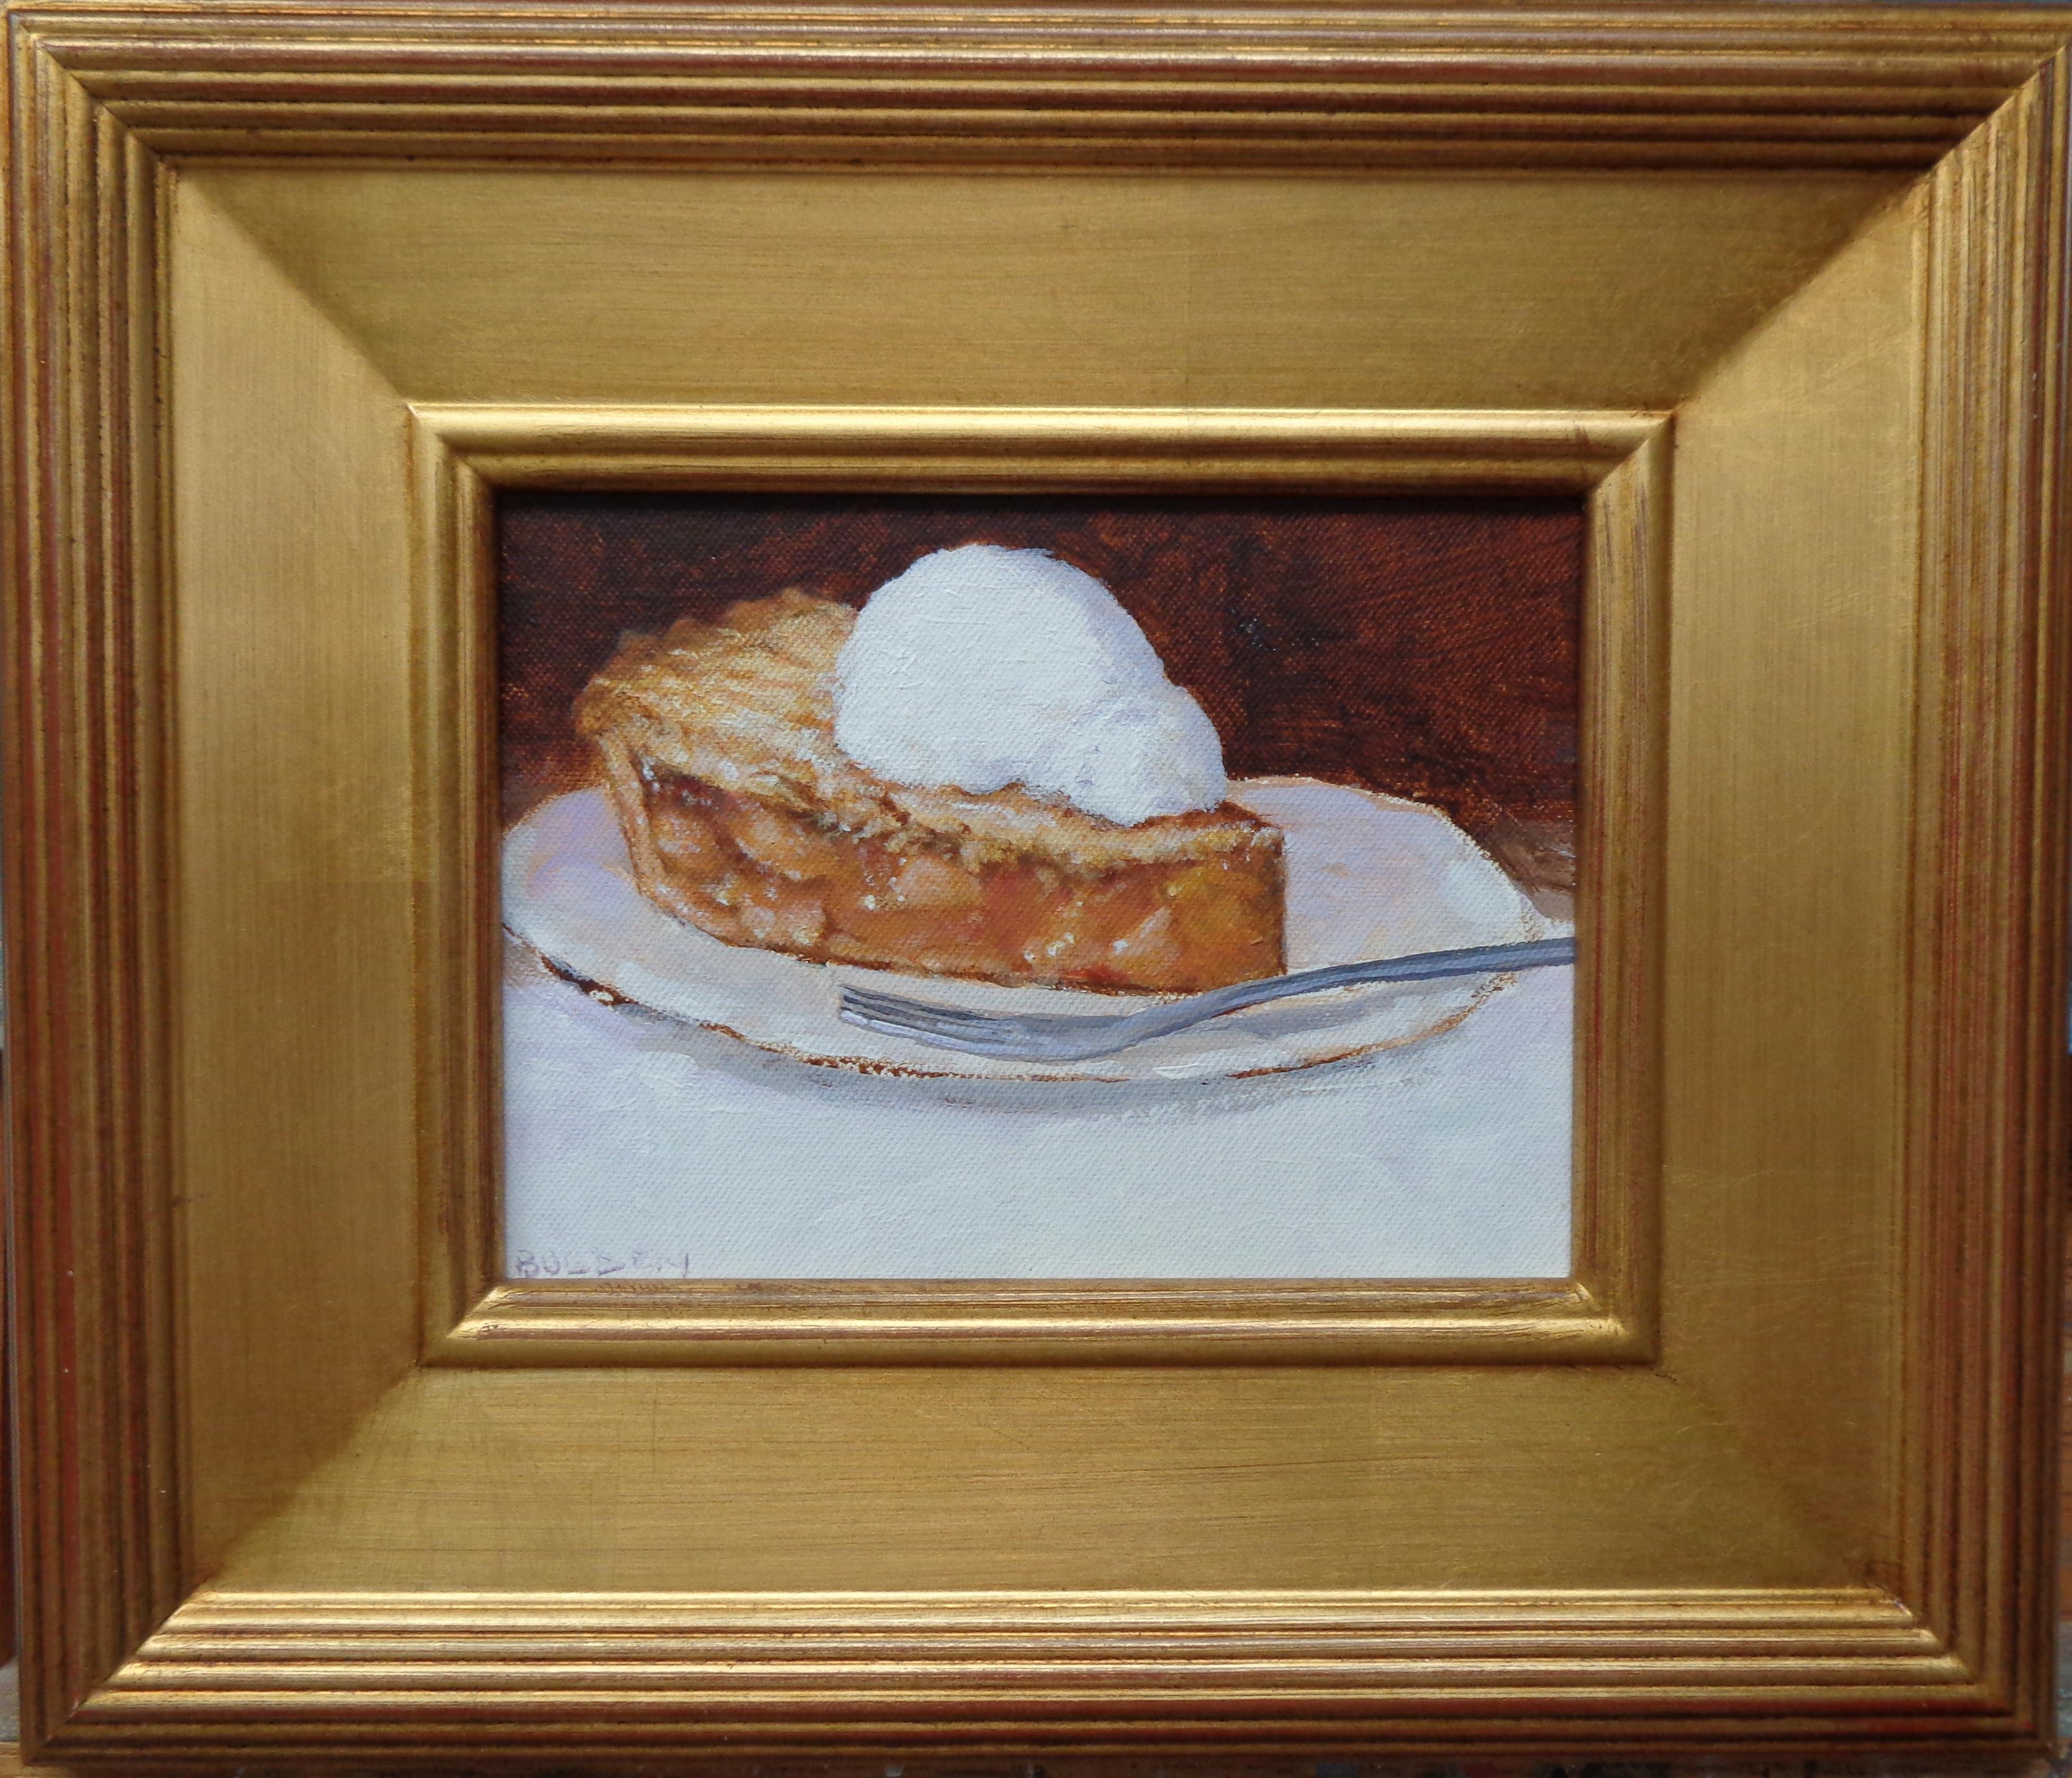 Dessert contemporain peint par Michael Budden, tarte aux pommes